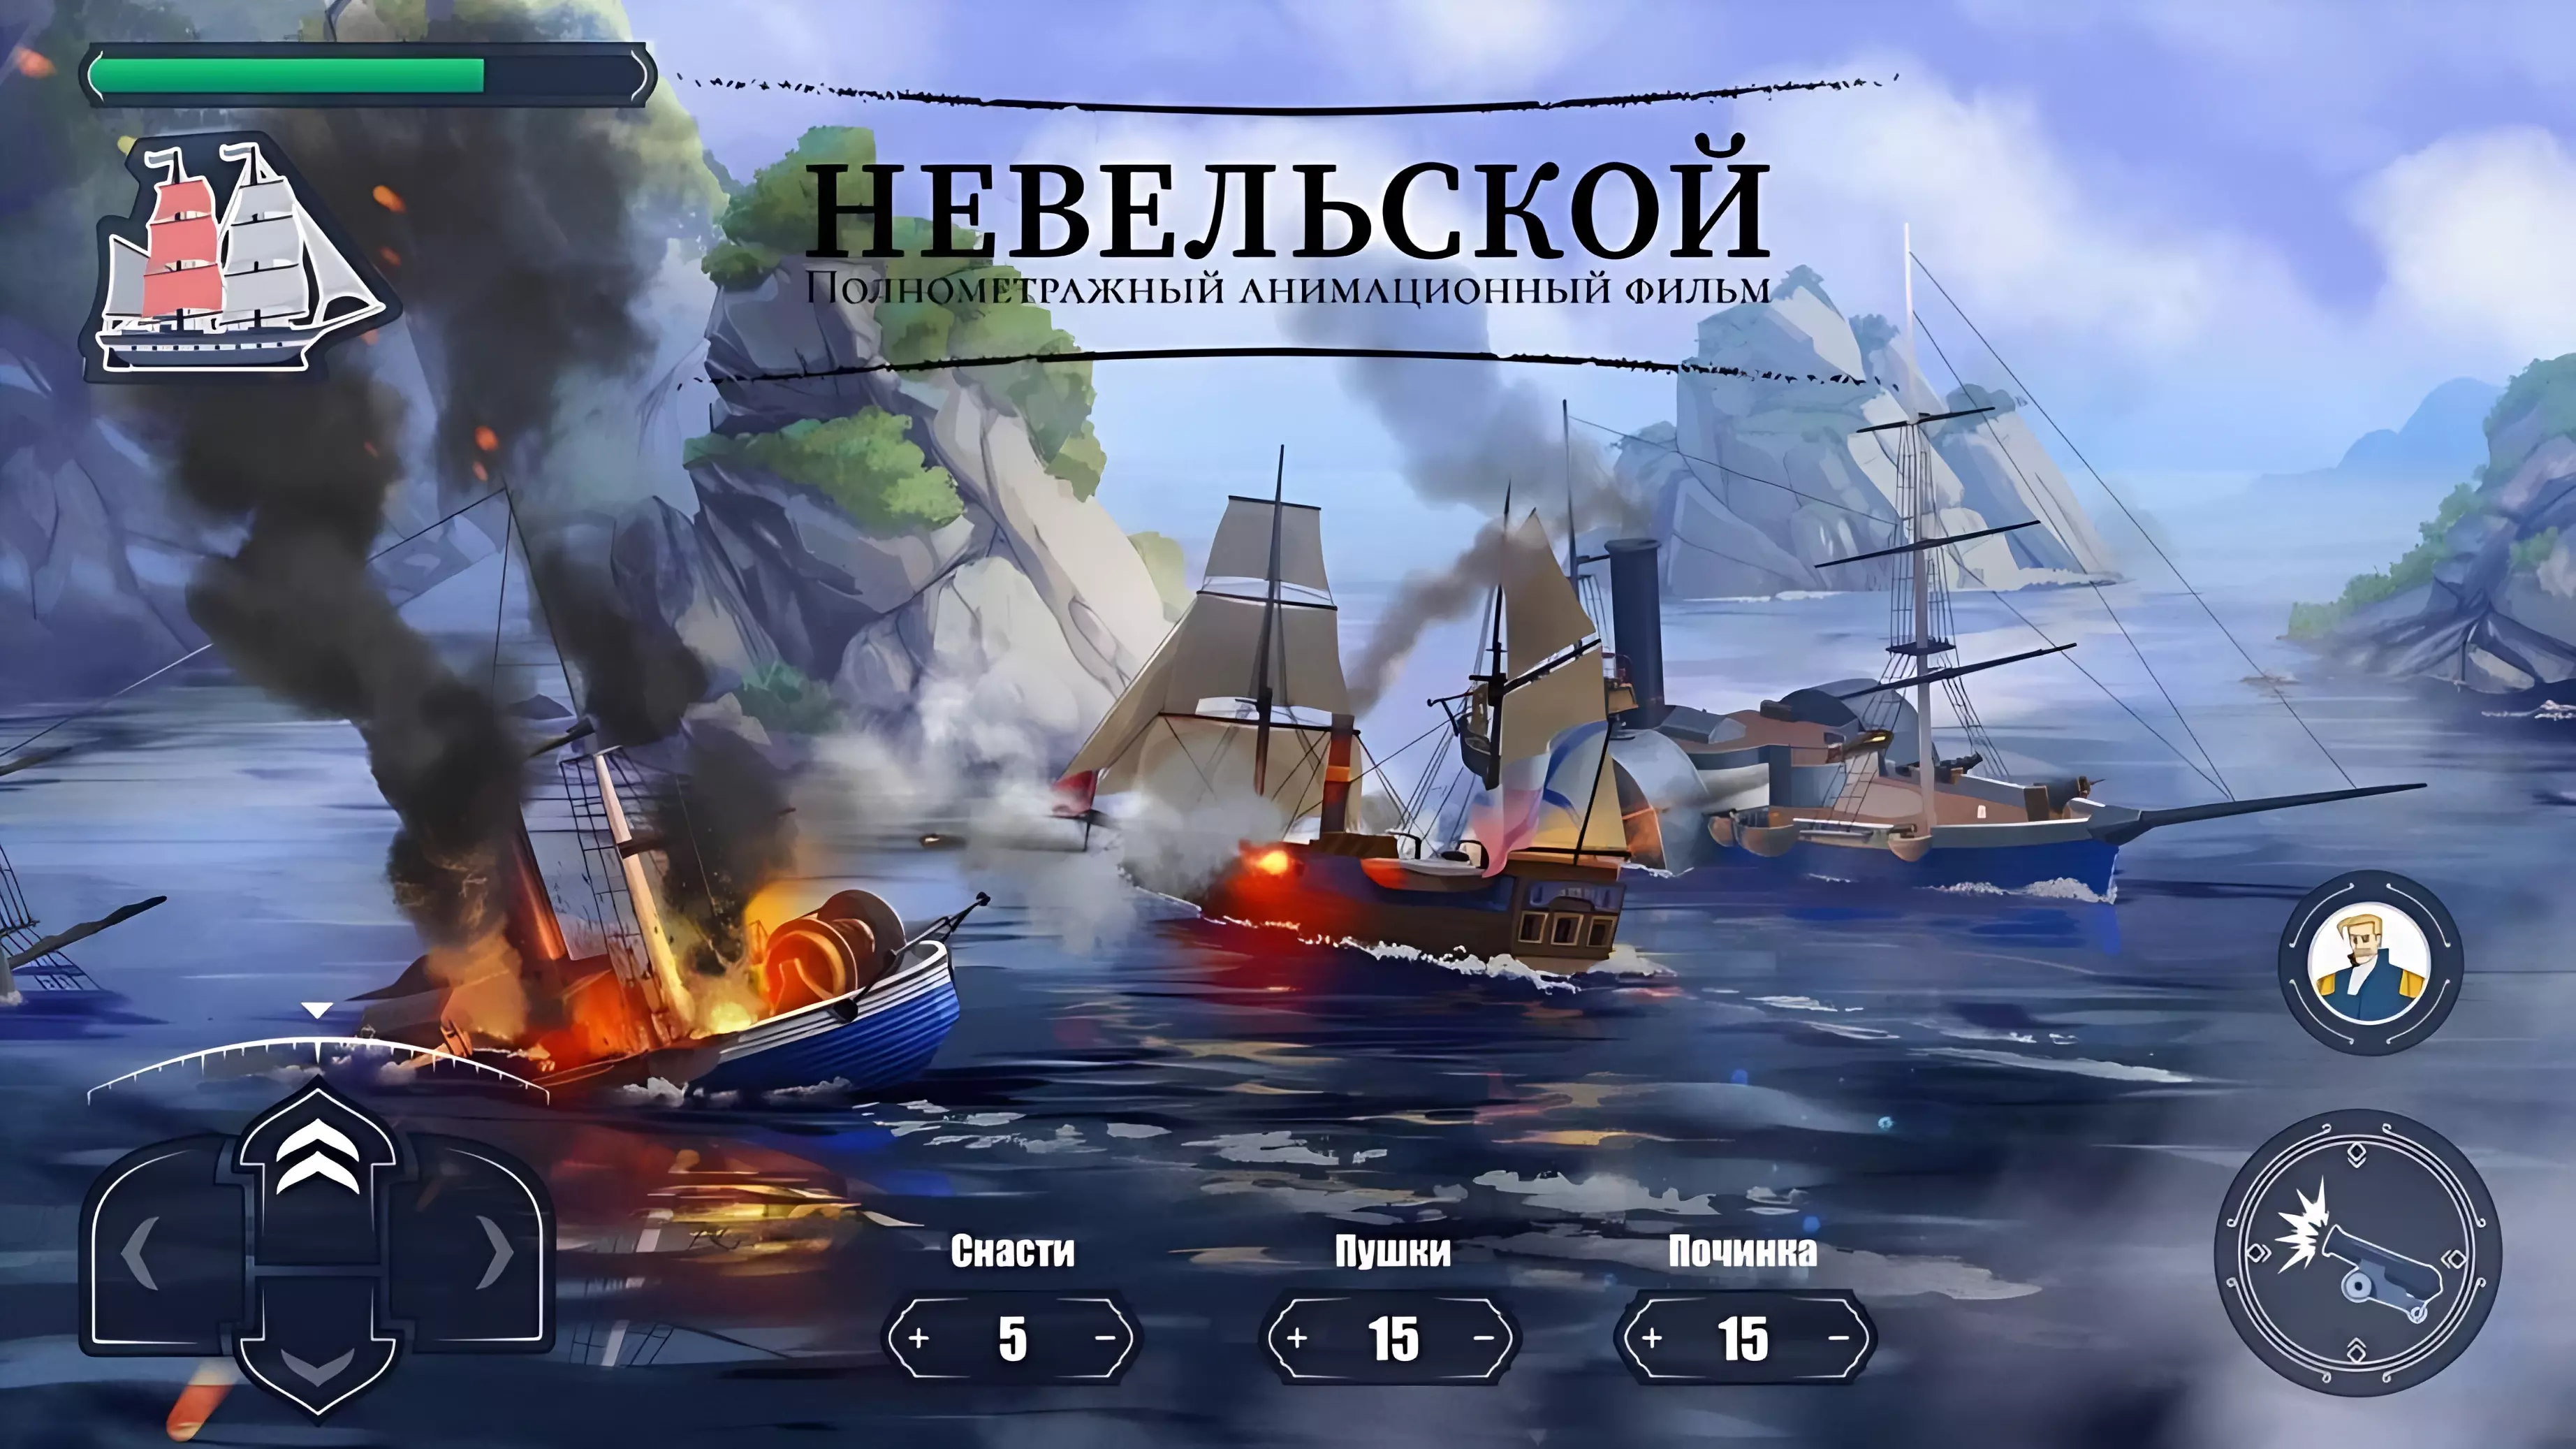 Мобильная игра о знаменитом адмирале Геннадии Невельском появится в Хабаровском крае